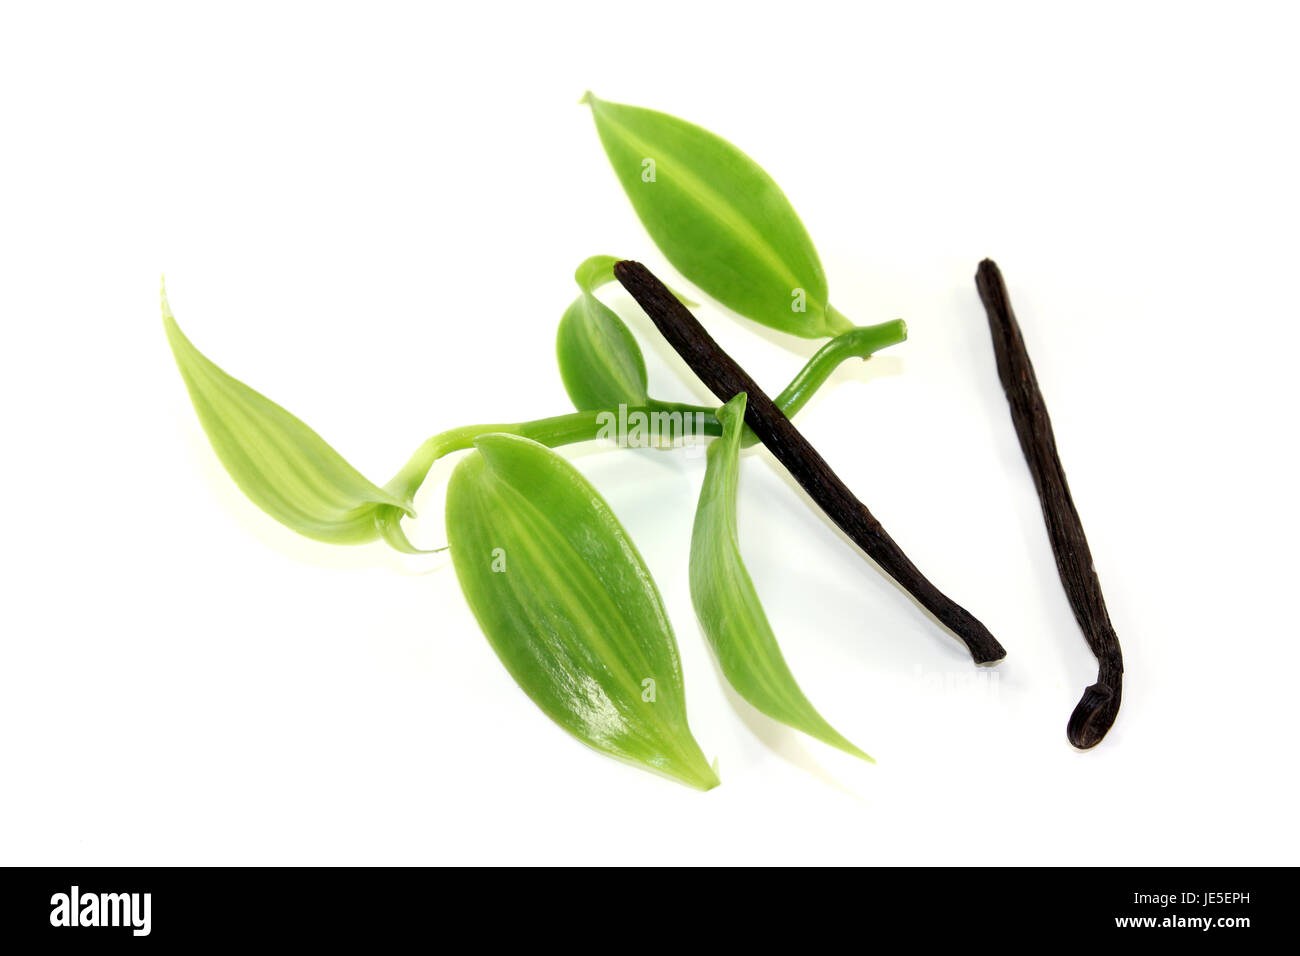 grüne Vanilleblätter mit Vanillestangen auf hellem Hintergrund Stock Photo